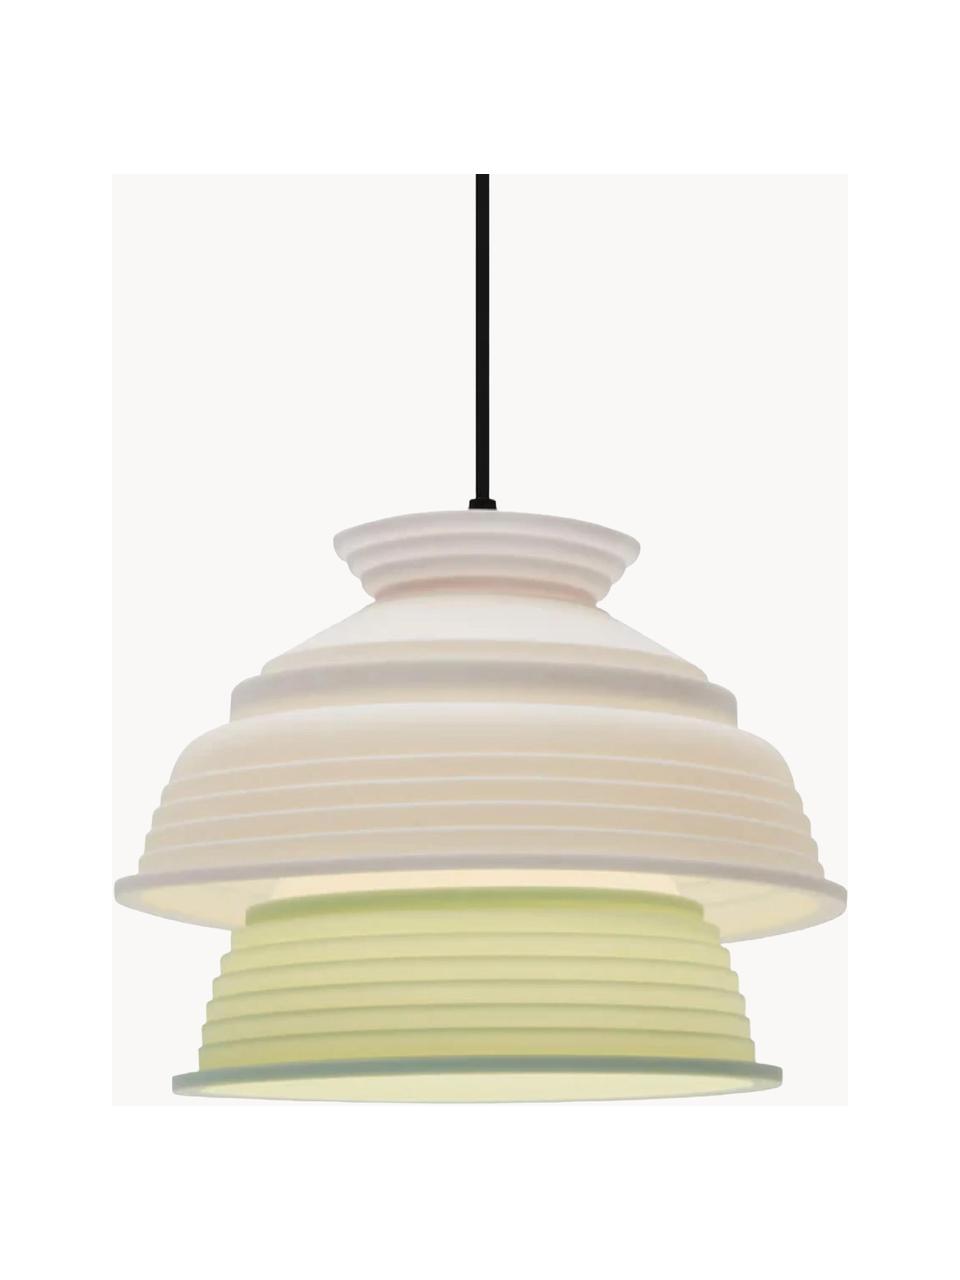 Kleine Pendelleuchte CL4, Lampenschirm: Silikon, Kunststoff, Hellgrün, Weiß, Ø 26 x H 20 cm